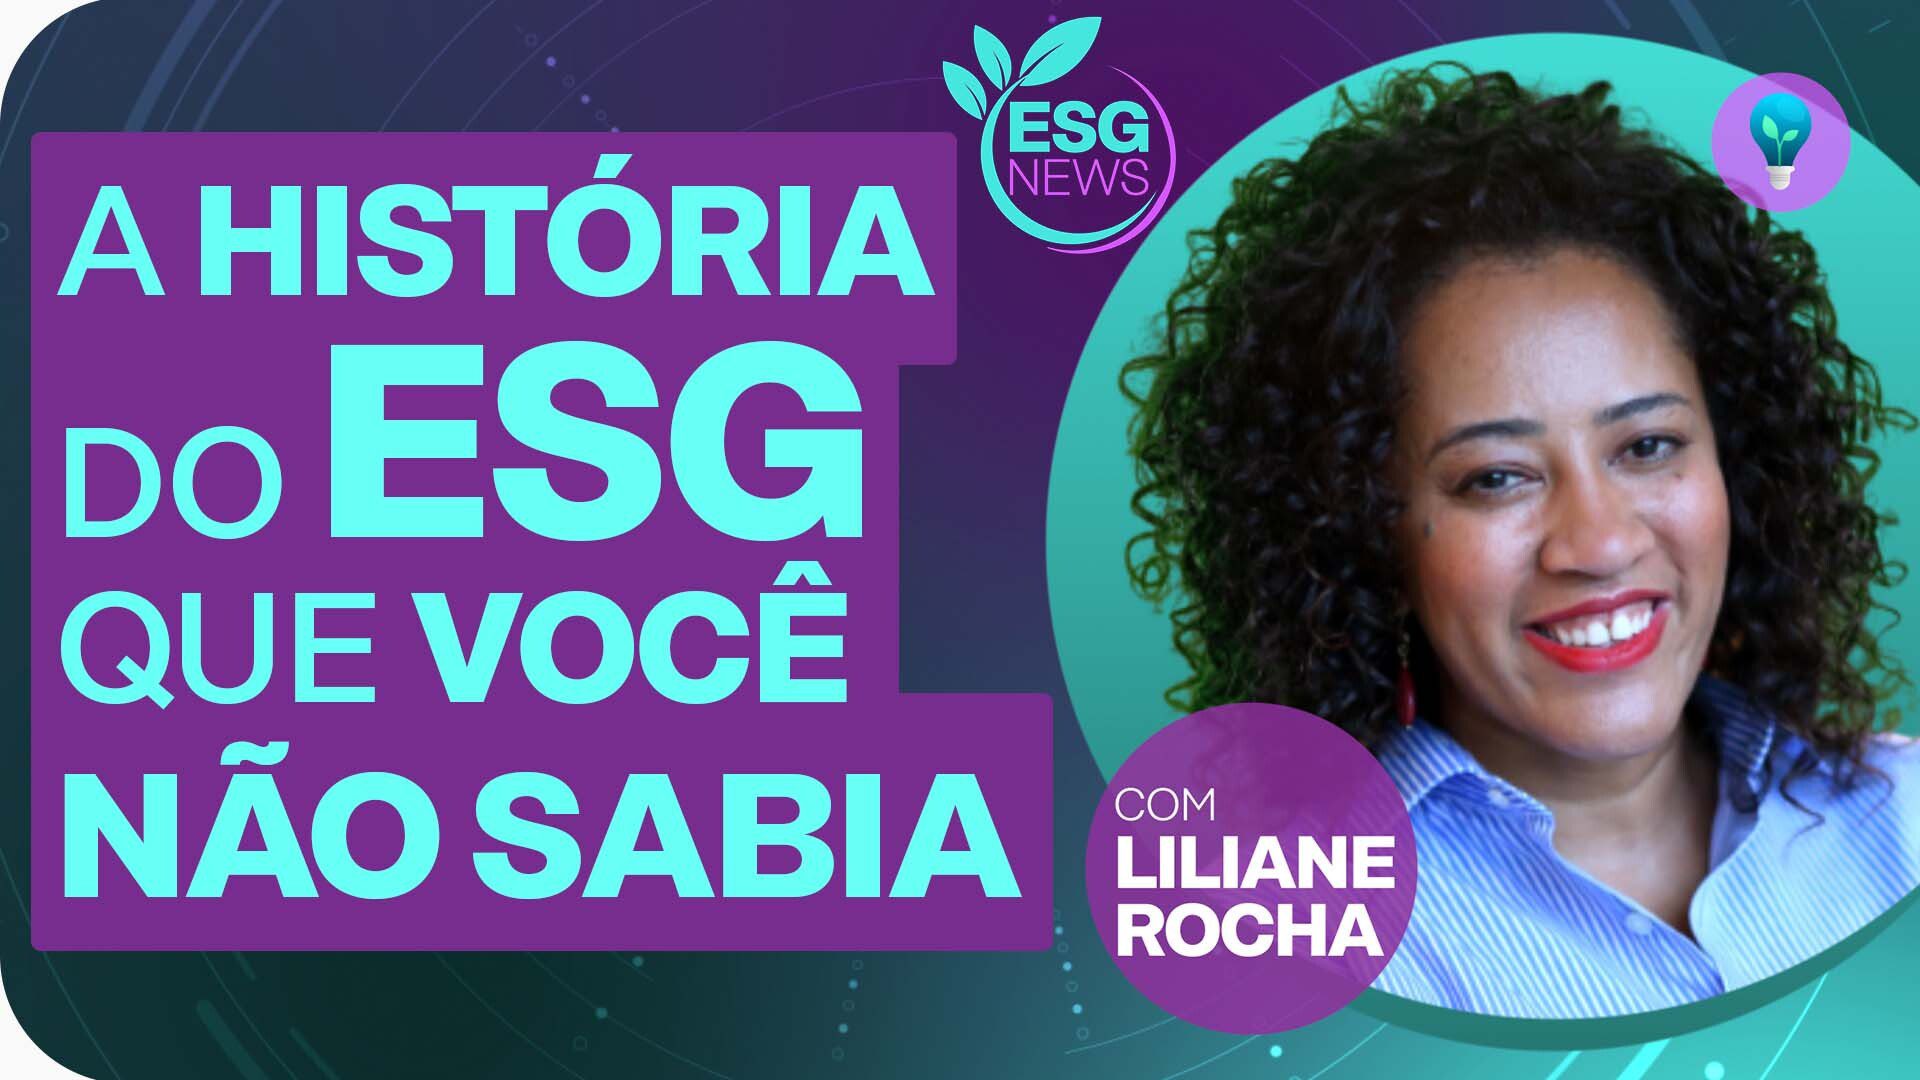 Liliane Rocha ESG News